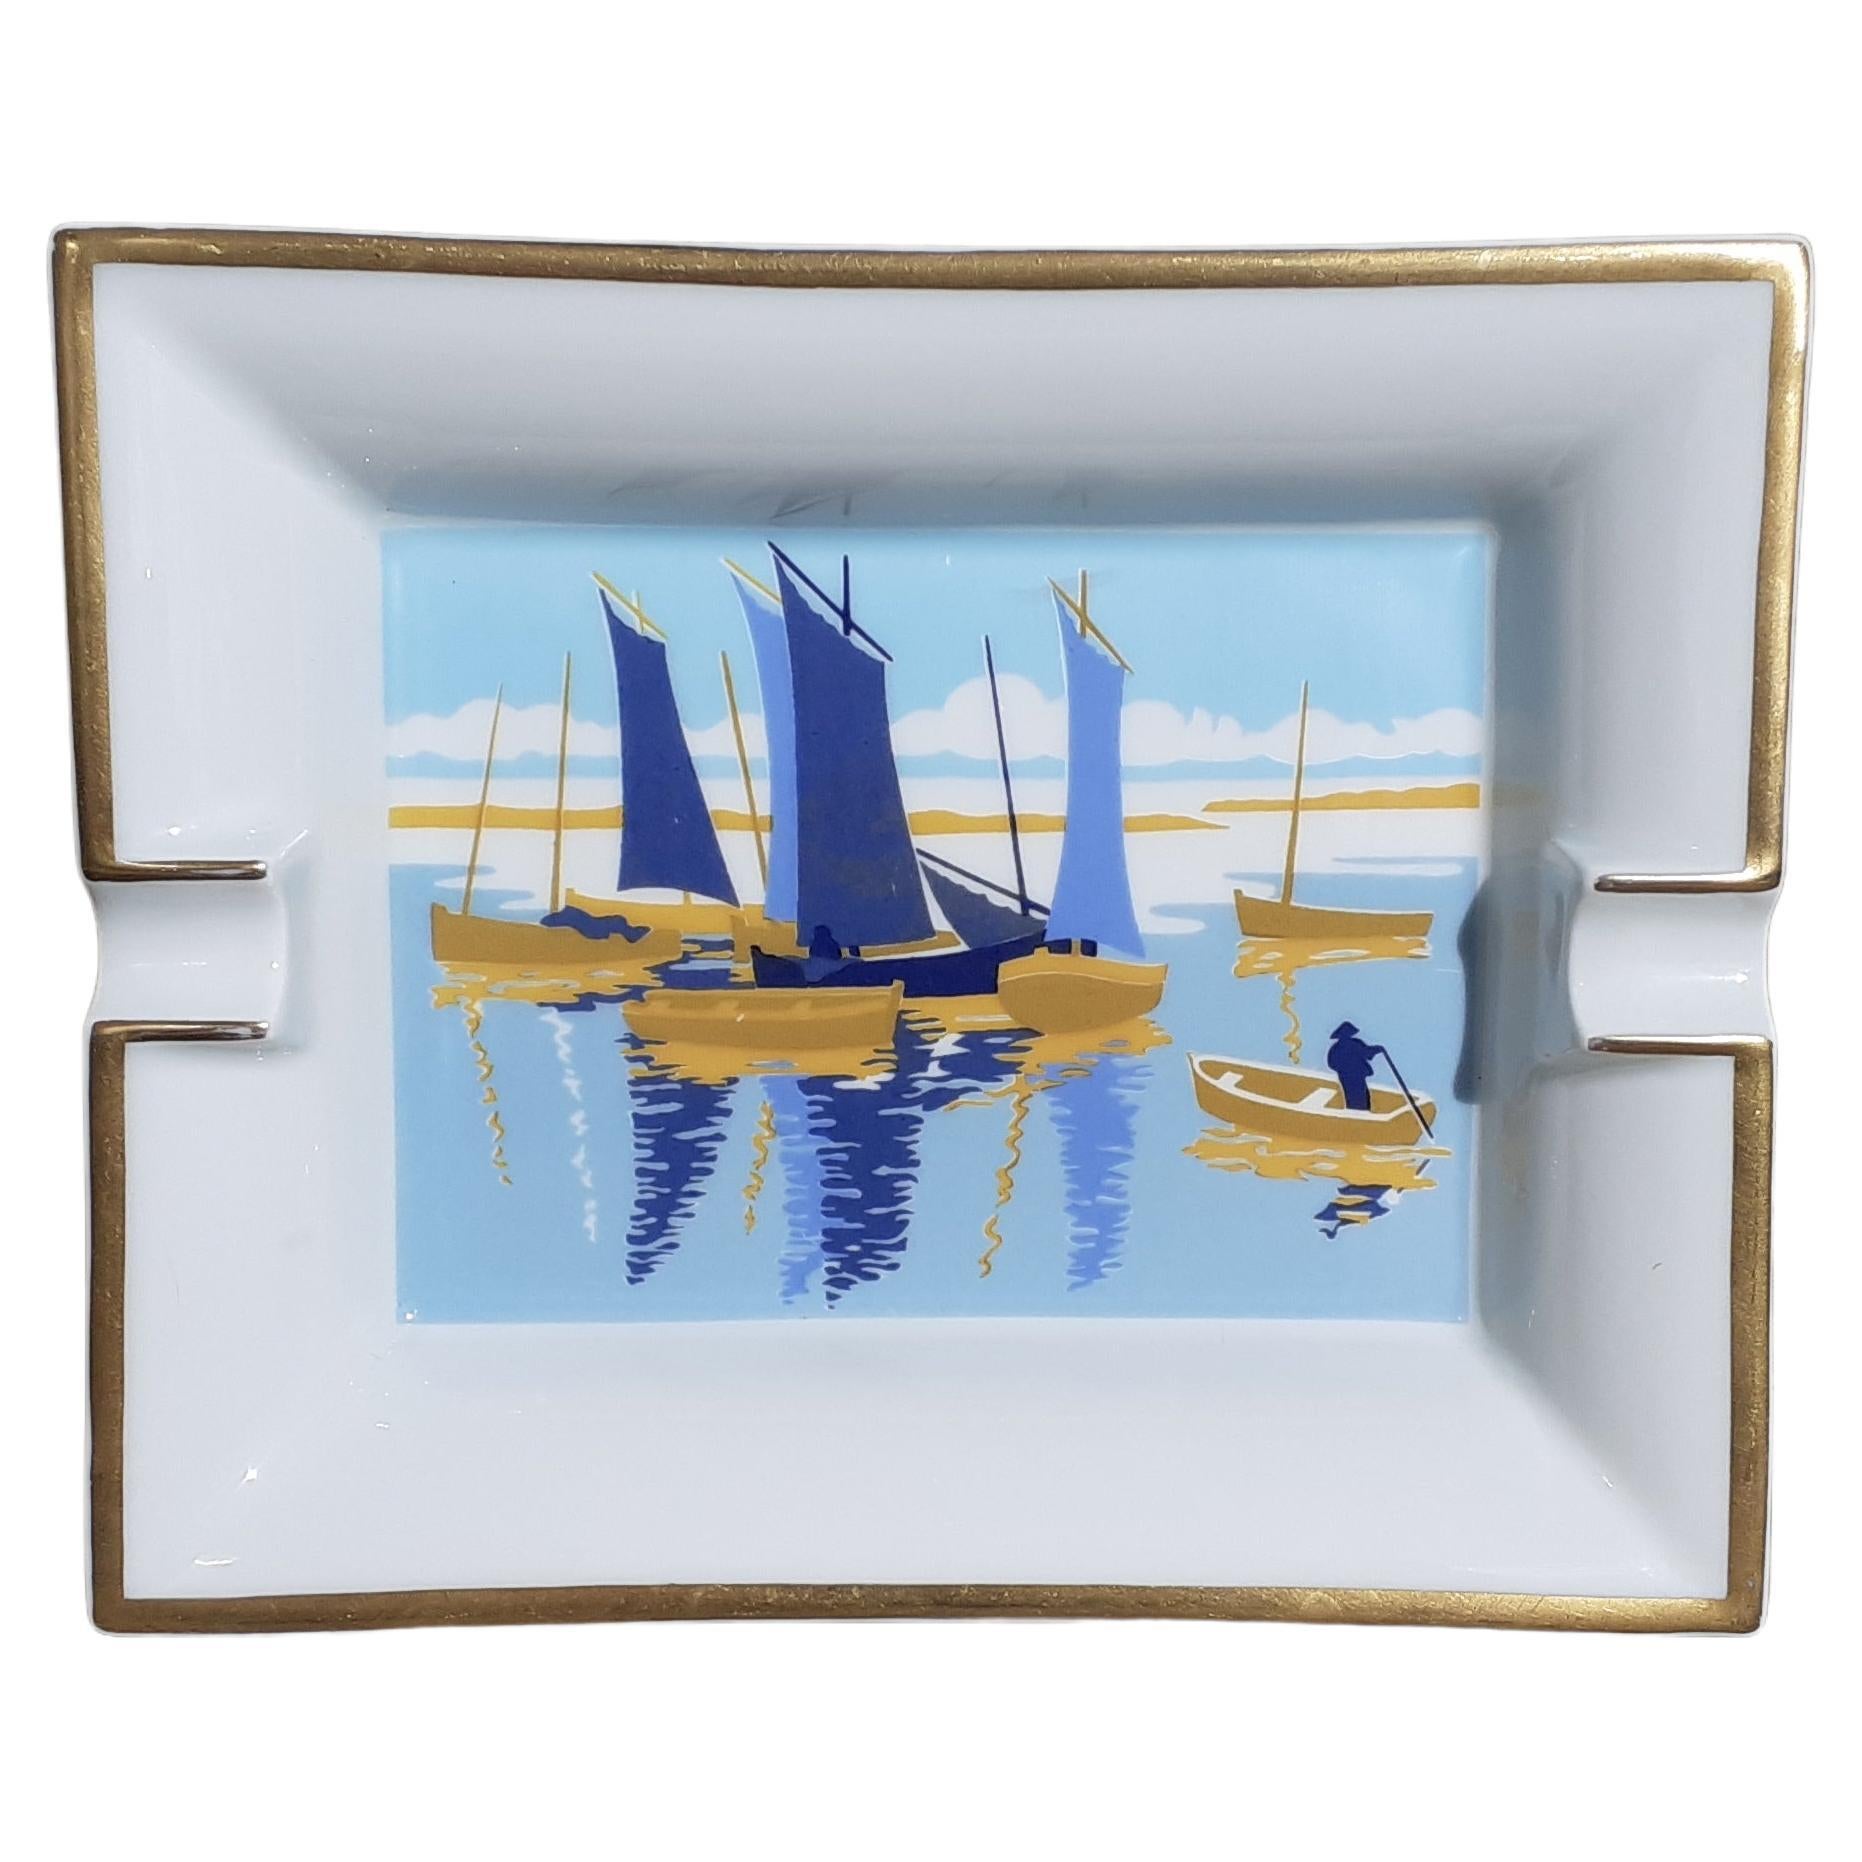 Hermès Cigar Ashtray Change Tray Small Boats Sailing Ships Print in Porcelain